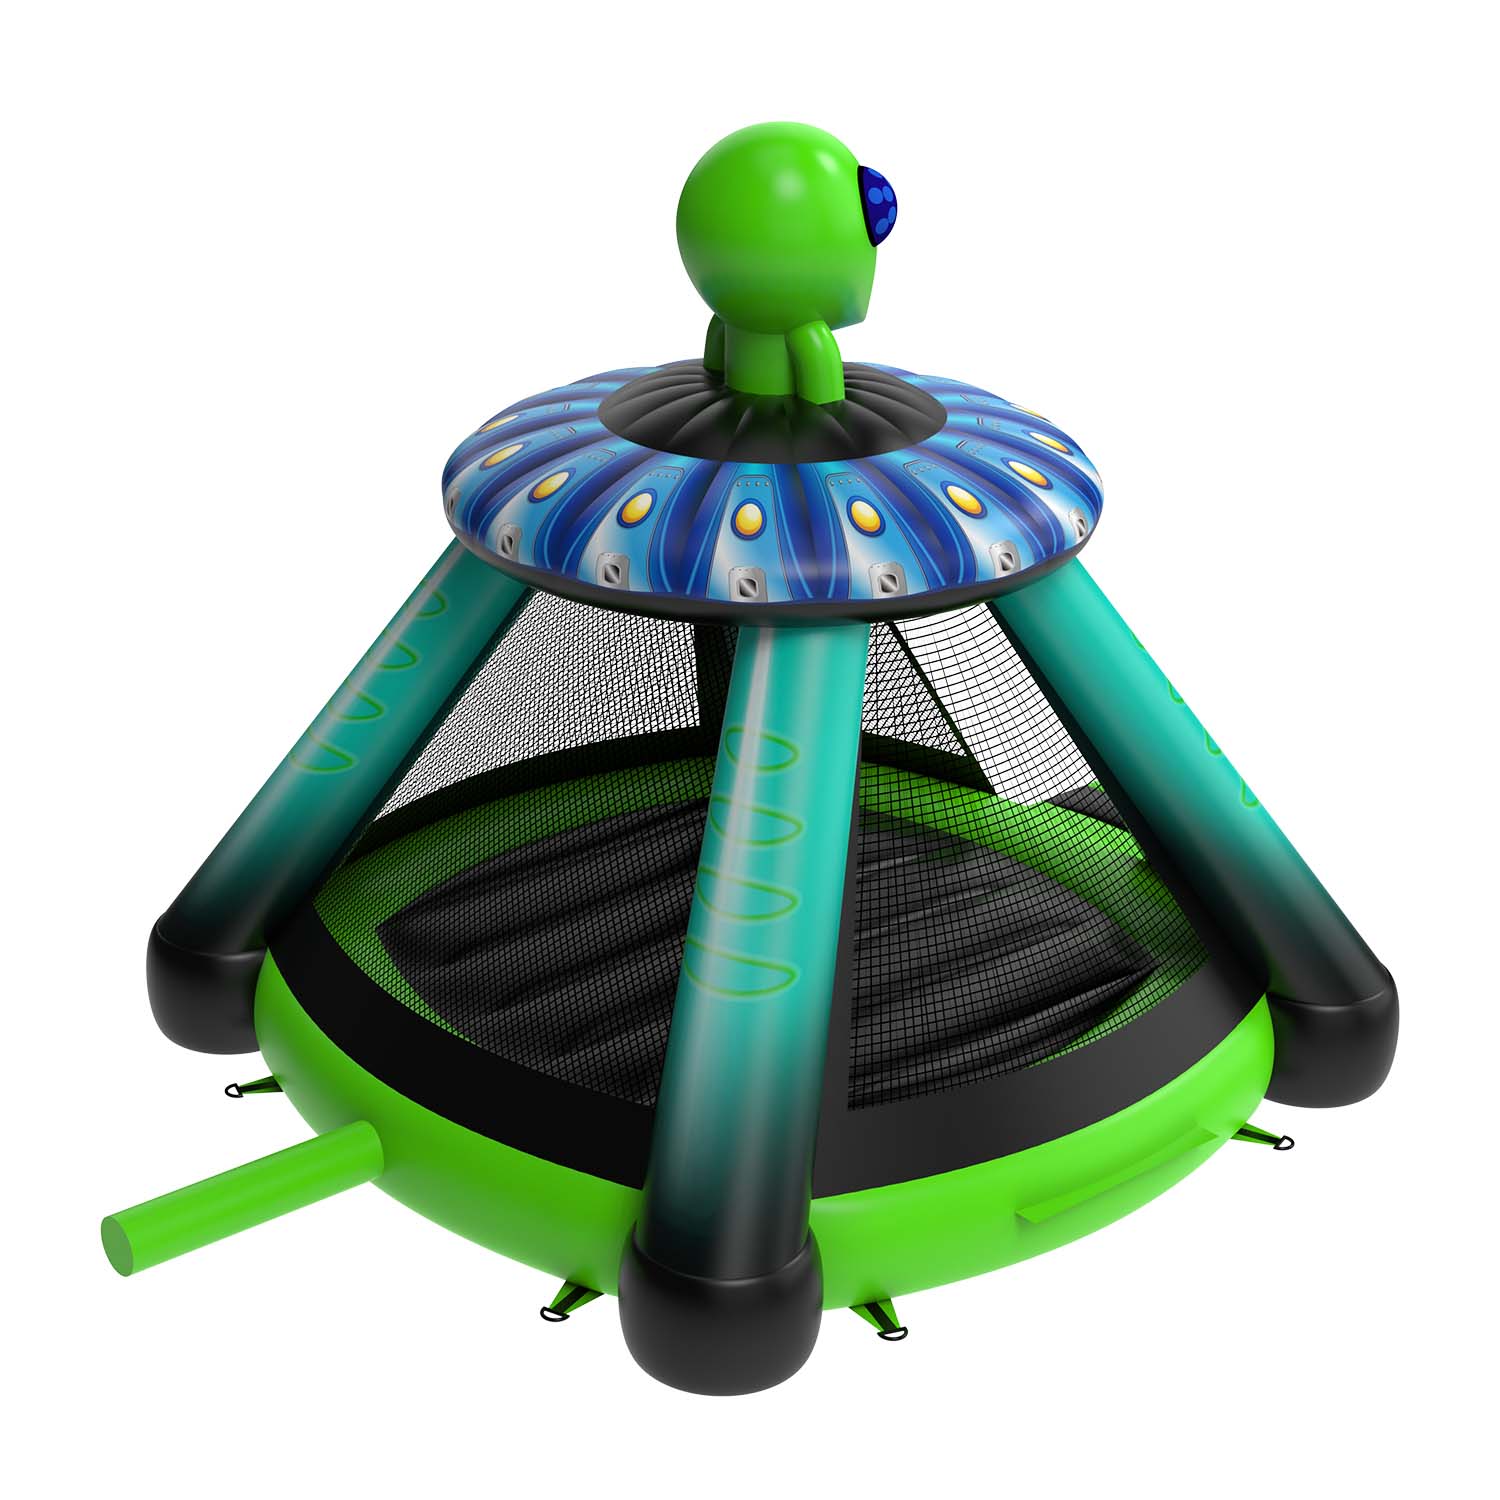 New Design Alien Inflatable Bounce HouseYG-161